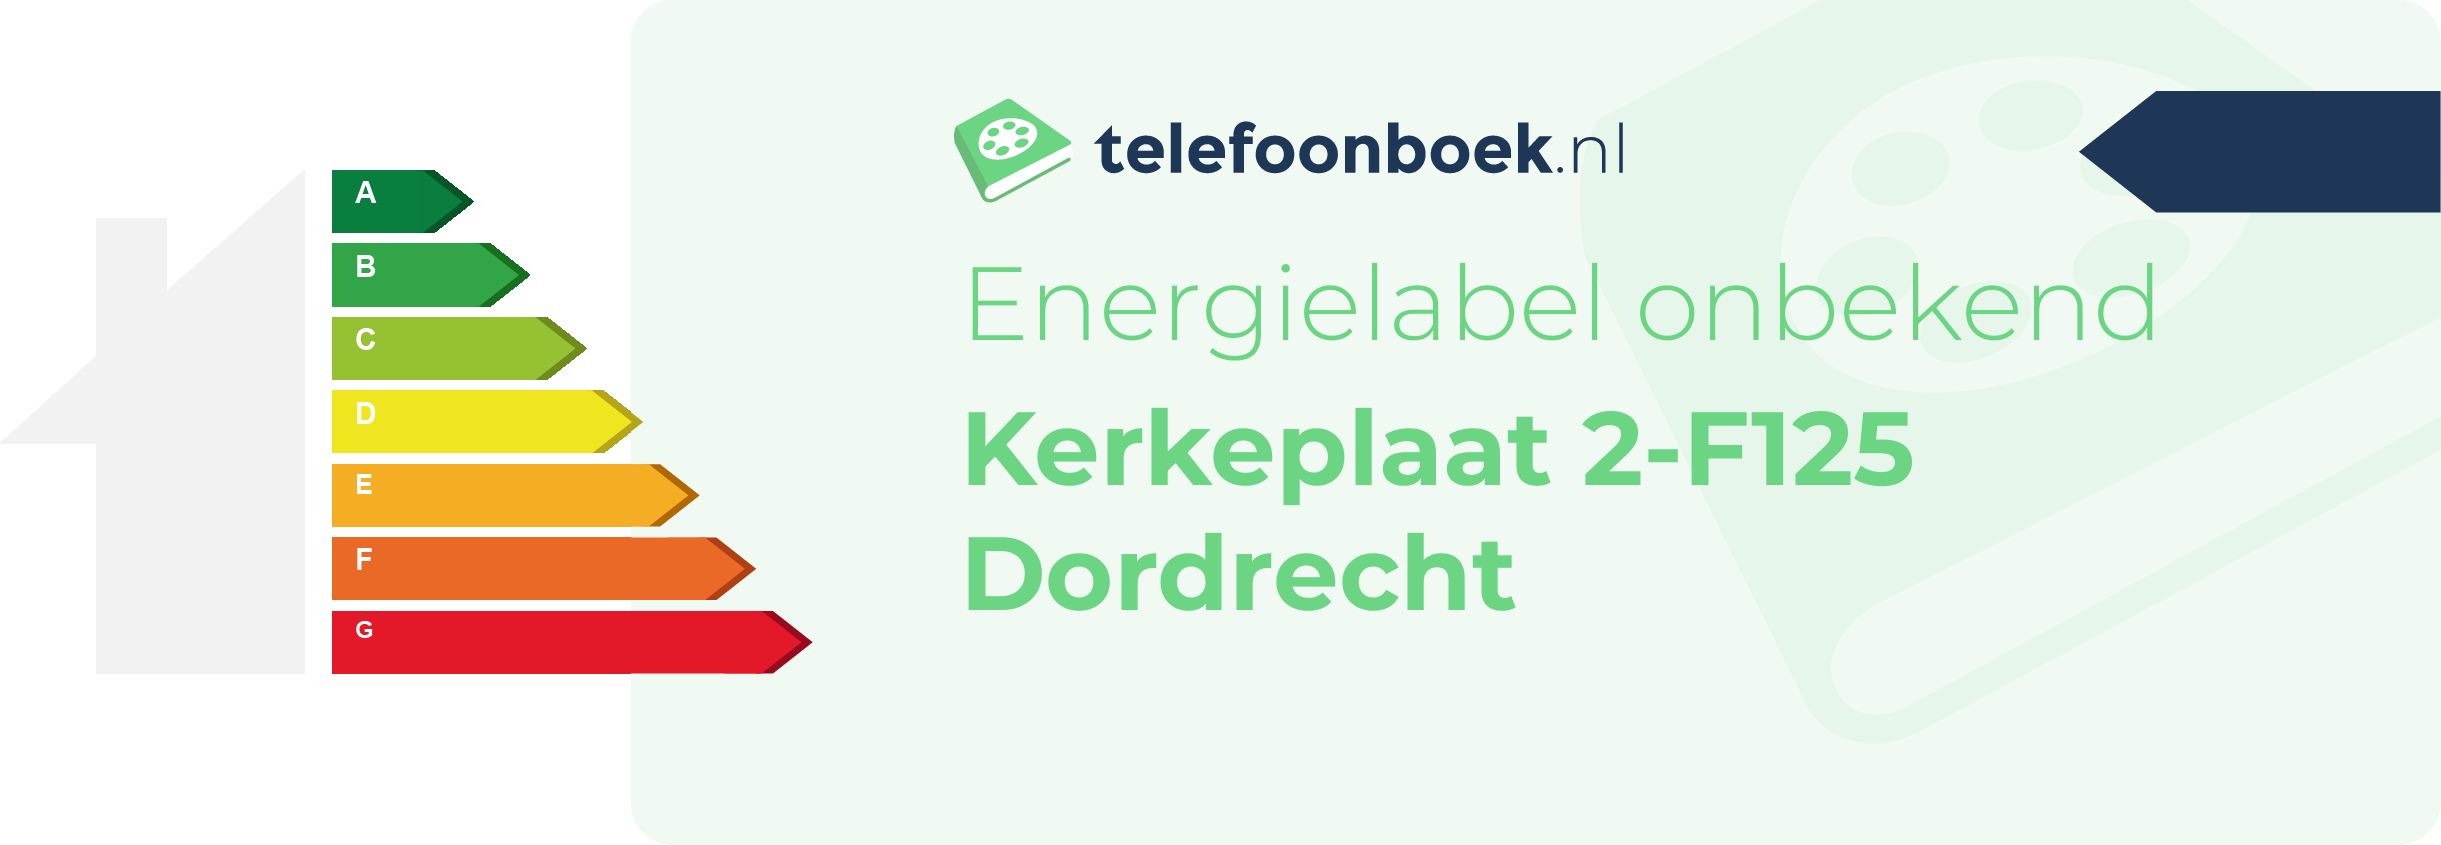 Energielabel Kerkeplaat 2-F125 Dordrecht